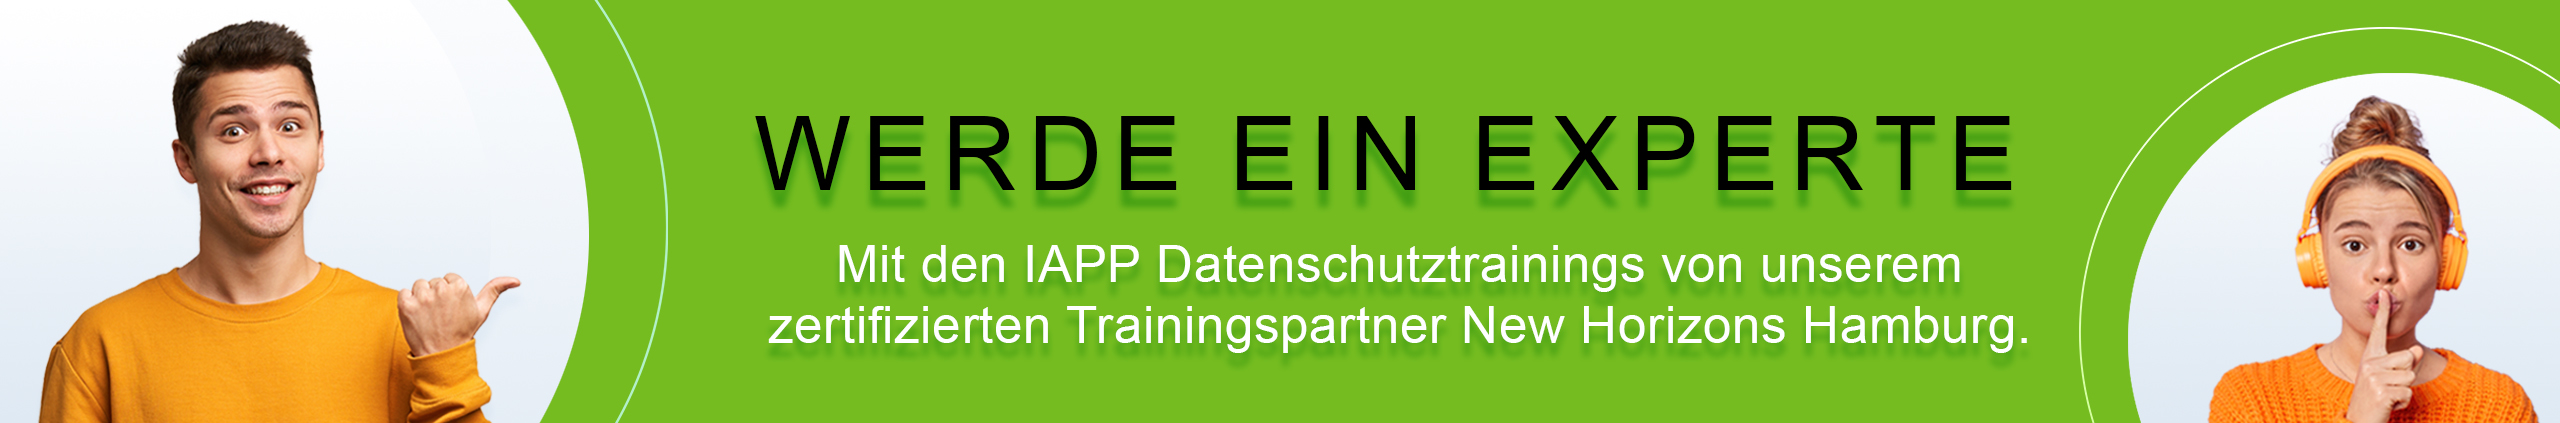 IAPP Datenschutztrainings by New horizons Hamburg